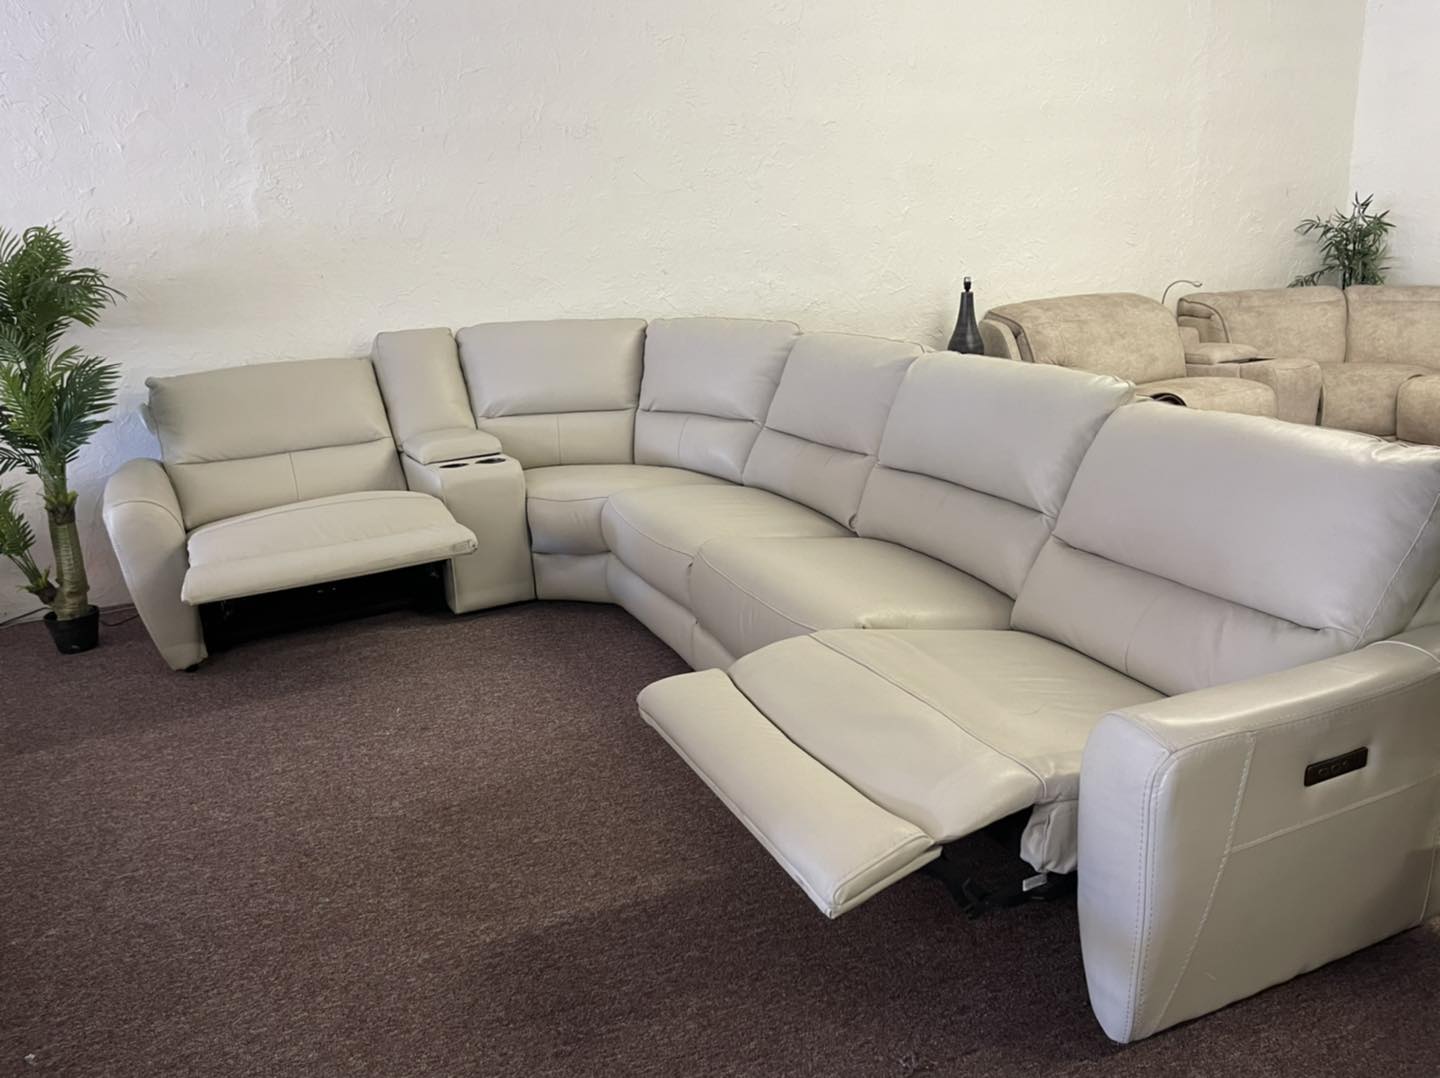 danvors leather sofa reviews